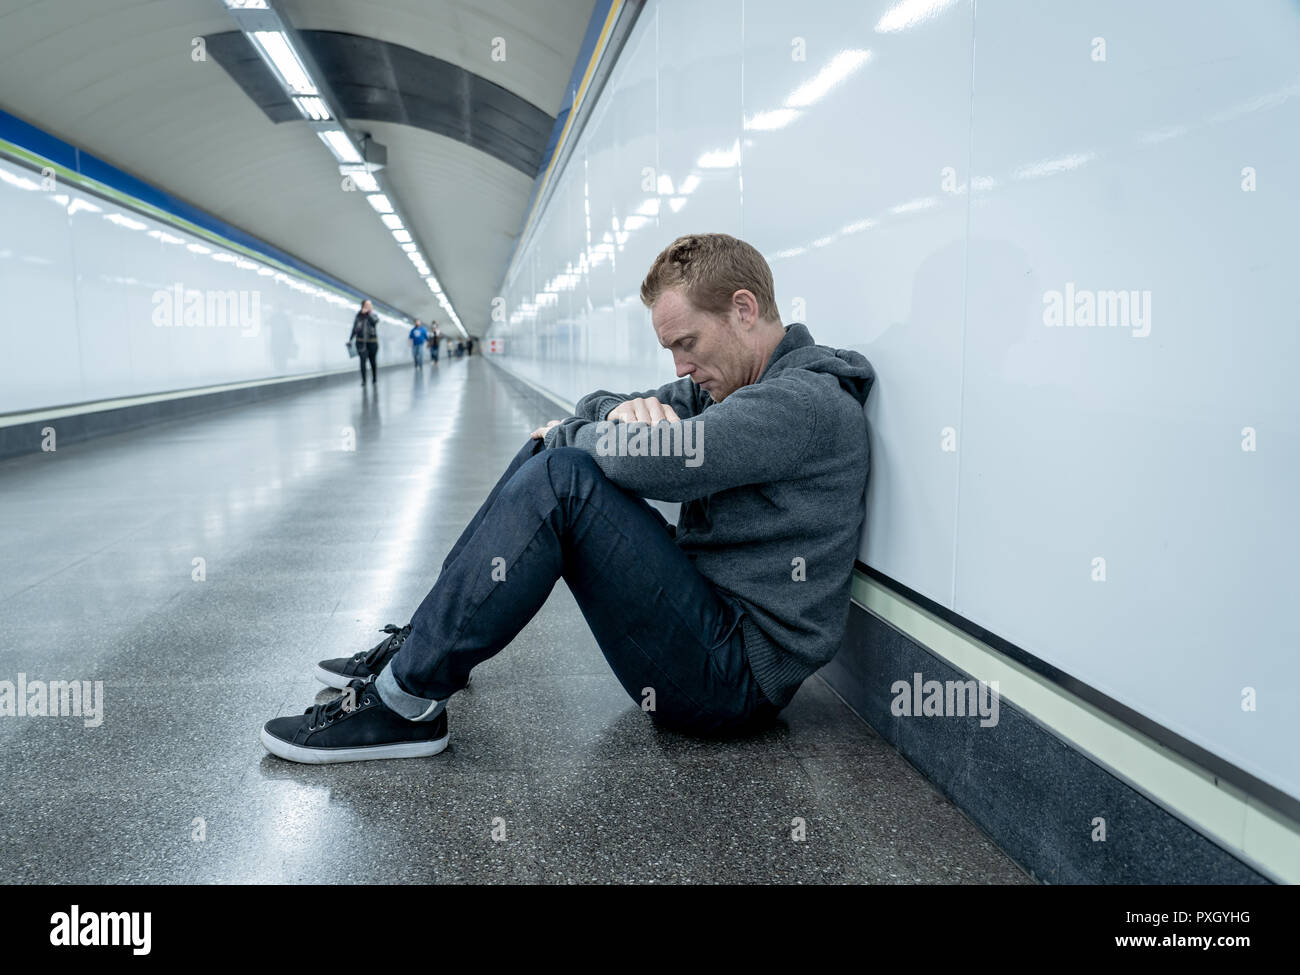 Miserable arbeitslose junge Mann weinen Drogensüchtigen Obdachlosen in Depression stress sitzen auf dem Boden Street U-Bahn Tunnel suchen verzweifelt lehnte sich an der Wand Stockfoto